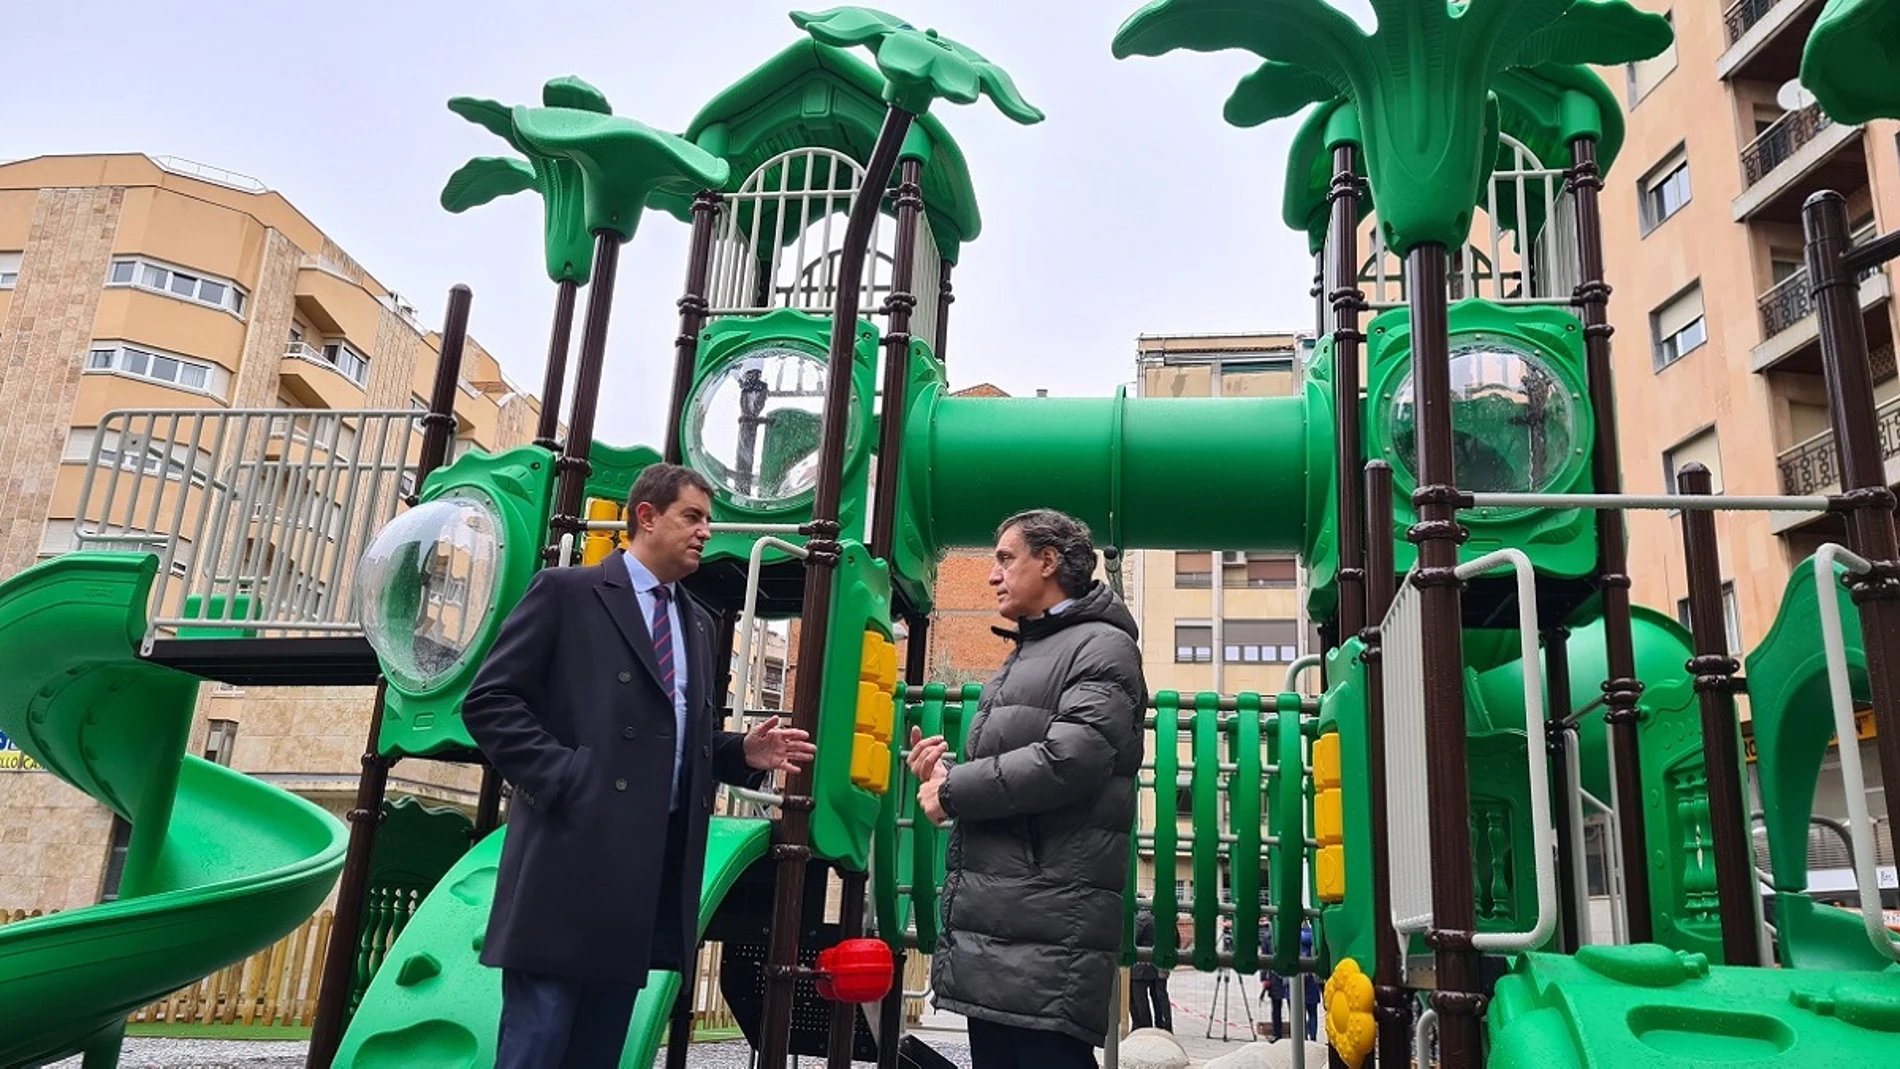 El alcalde de Salamanca, Carlos García Carbayo, conversa con el consejero Ángel Ibáñez, durante la inauguración del parque